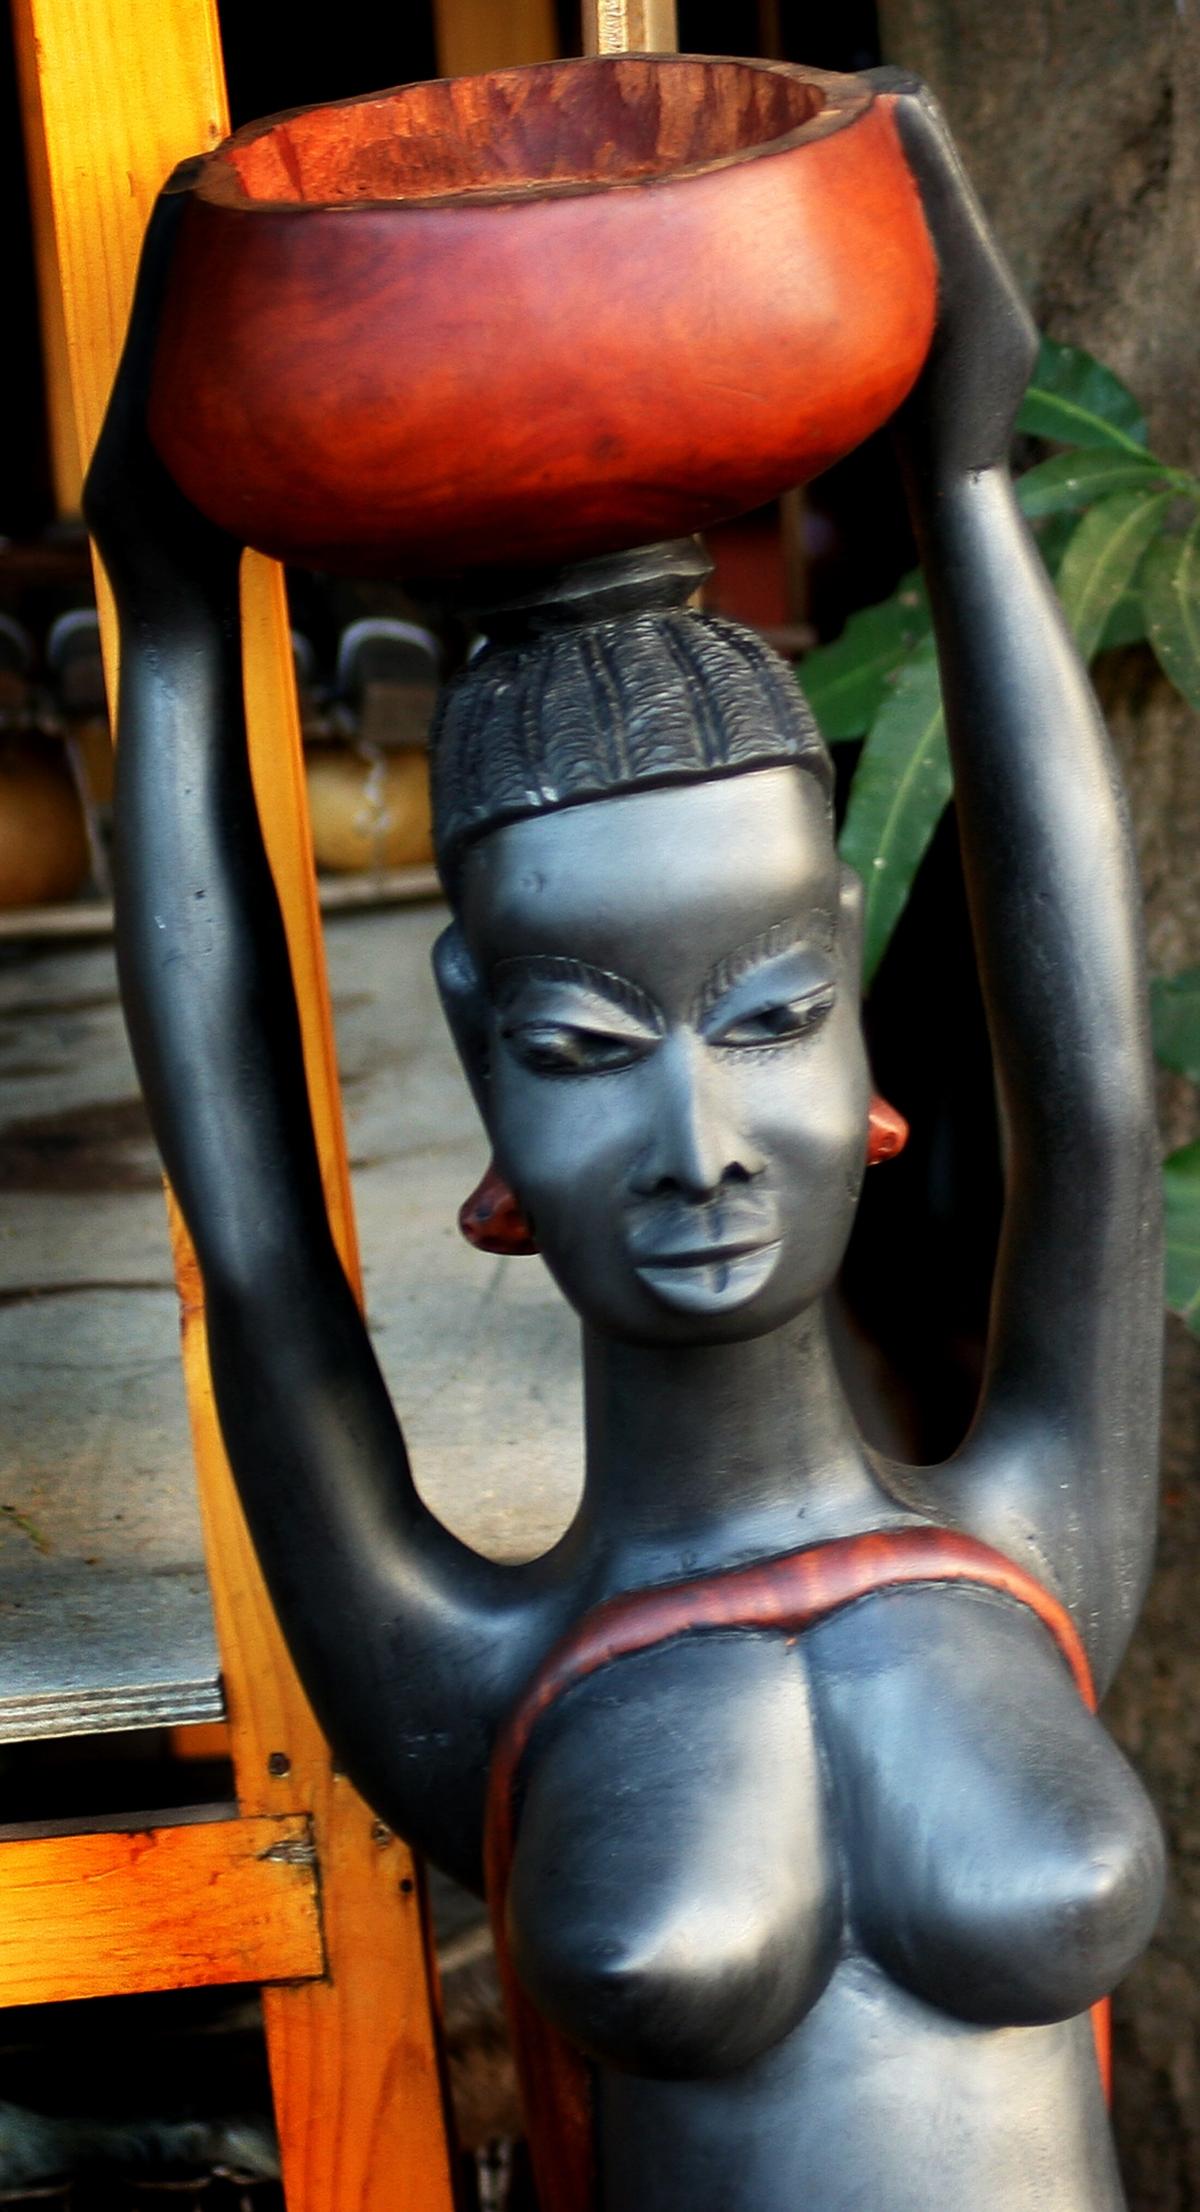 TrästatyettStatyetter av trä är en klassisk afrikansk souvenir. Välj mellan kvinnokroppar, djur och abstrakta figurer. Den här är gjord av mahogny. Pris före prutning: 500 kr.